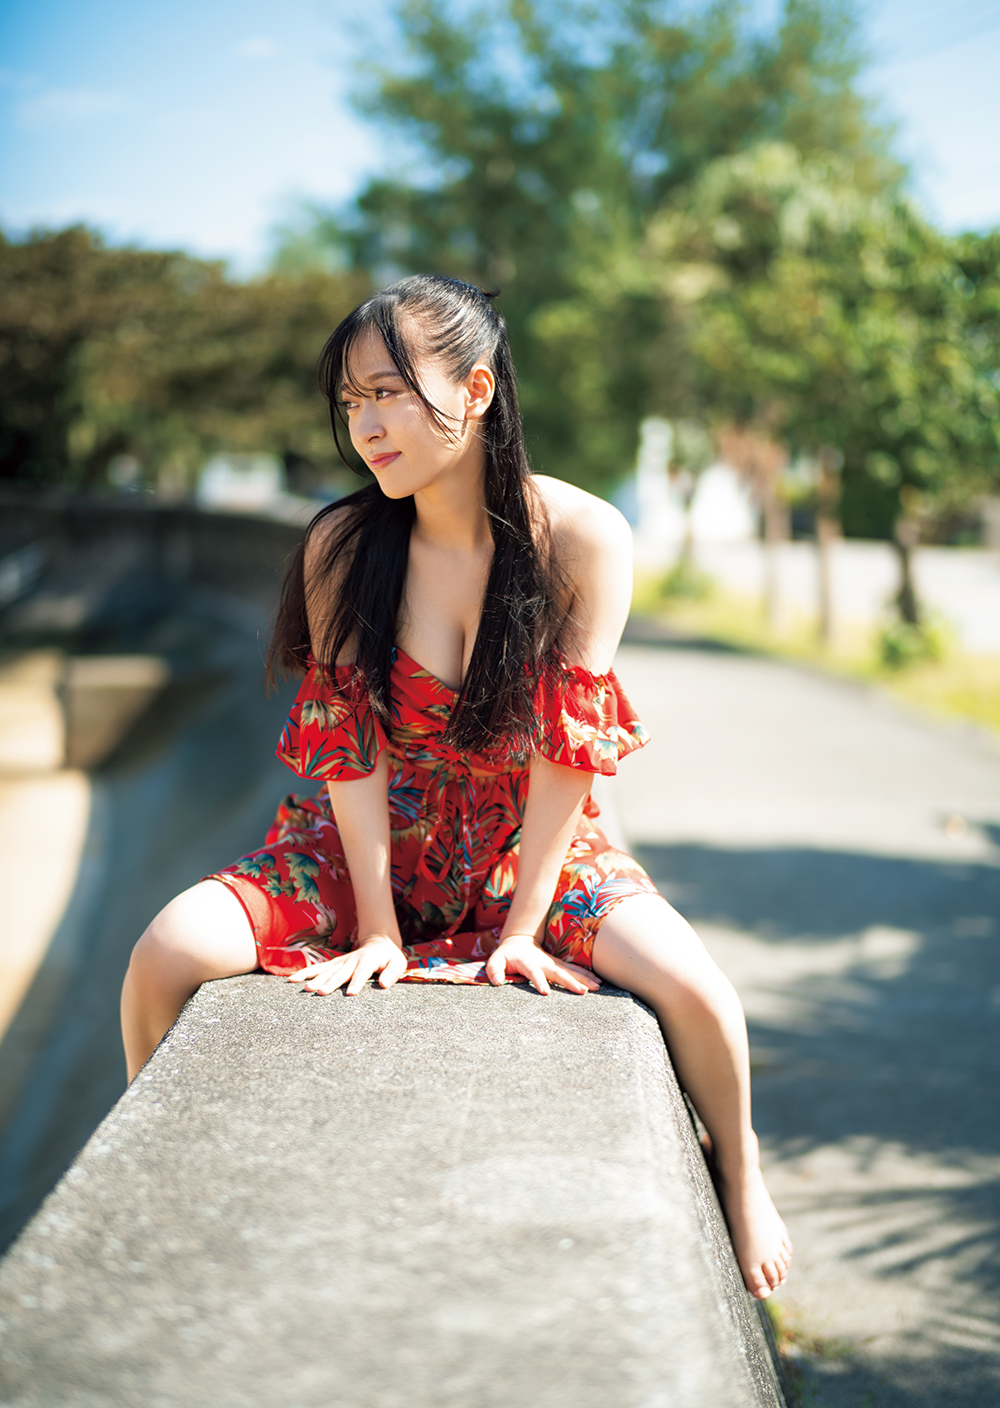 モーニング娘。’23 の歌姫、小田さくら 写真集「さくら日和」が3月12日のバースデーにリリース！“色んな私を楽しんでいただきたいです！”